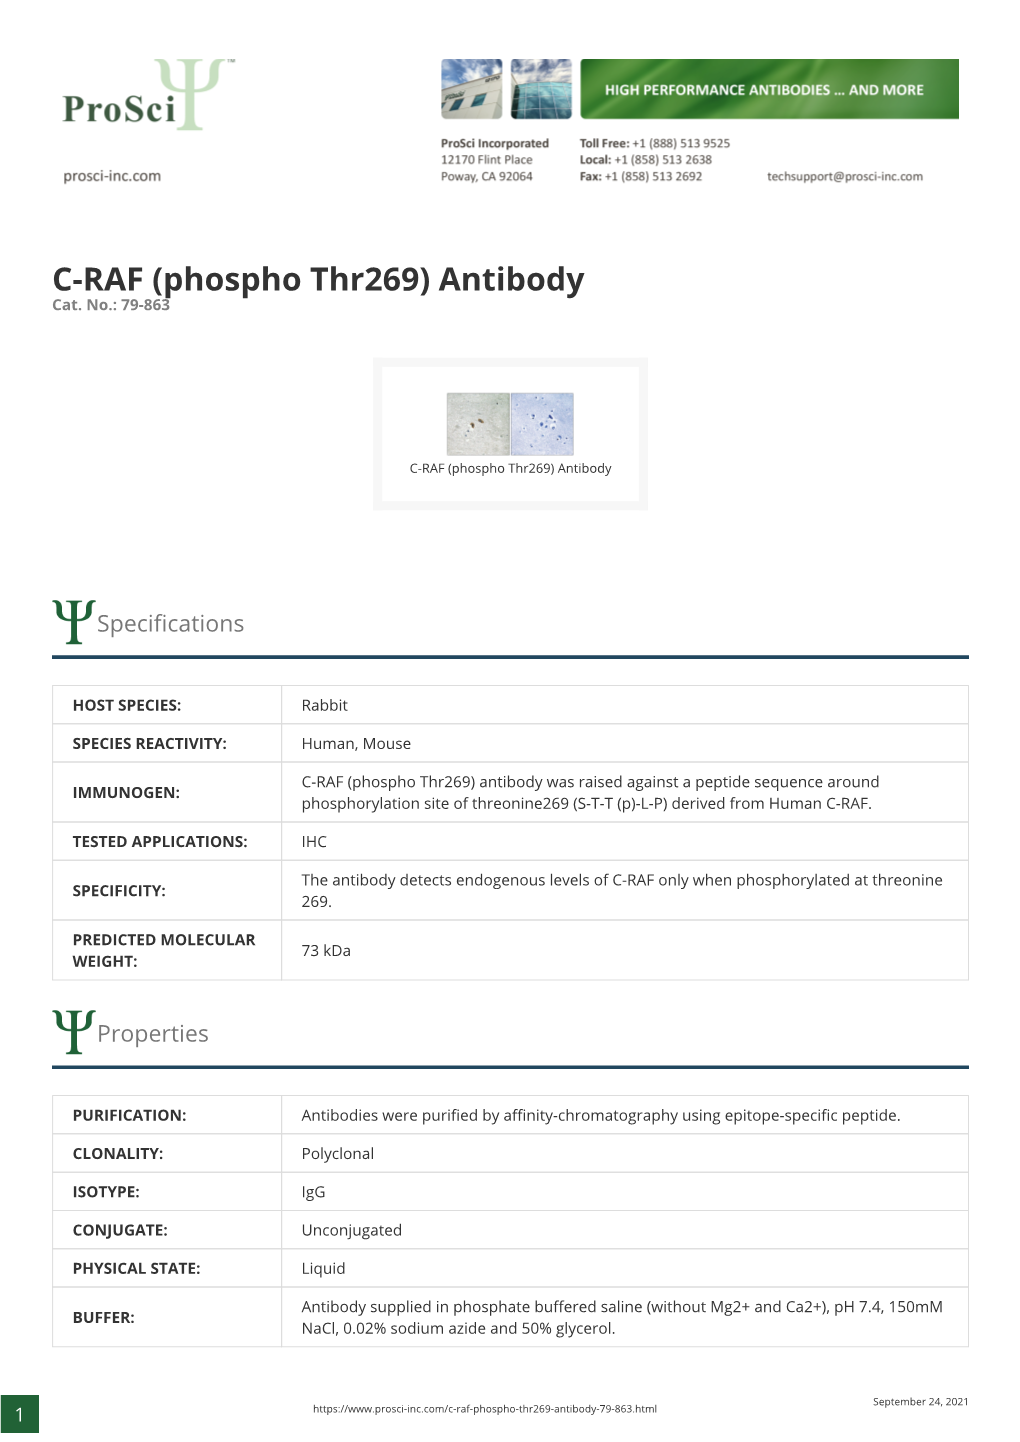 C-RAF (Phospho Thr269) Antibody Cat